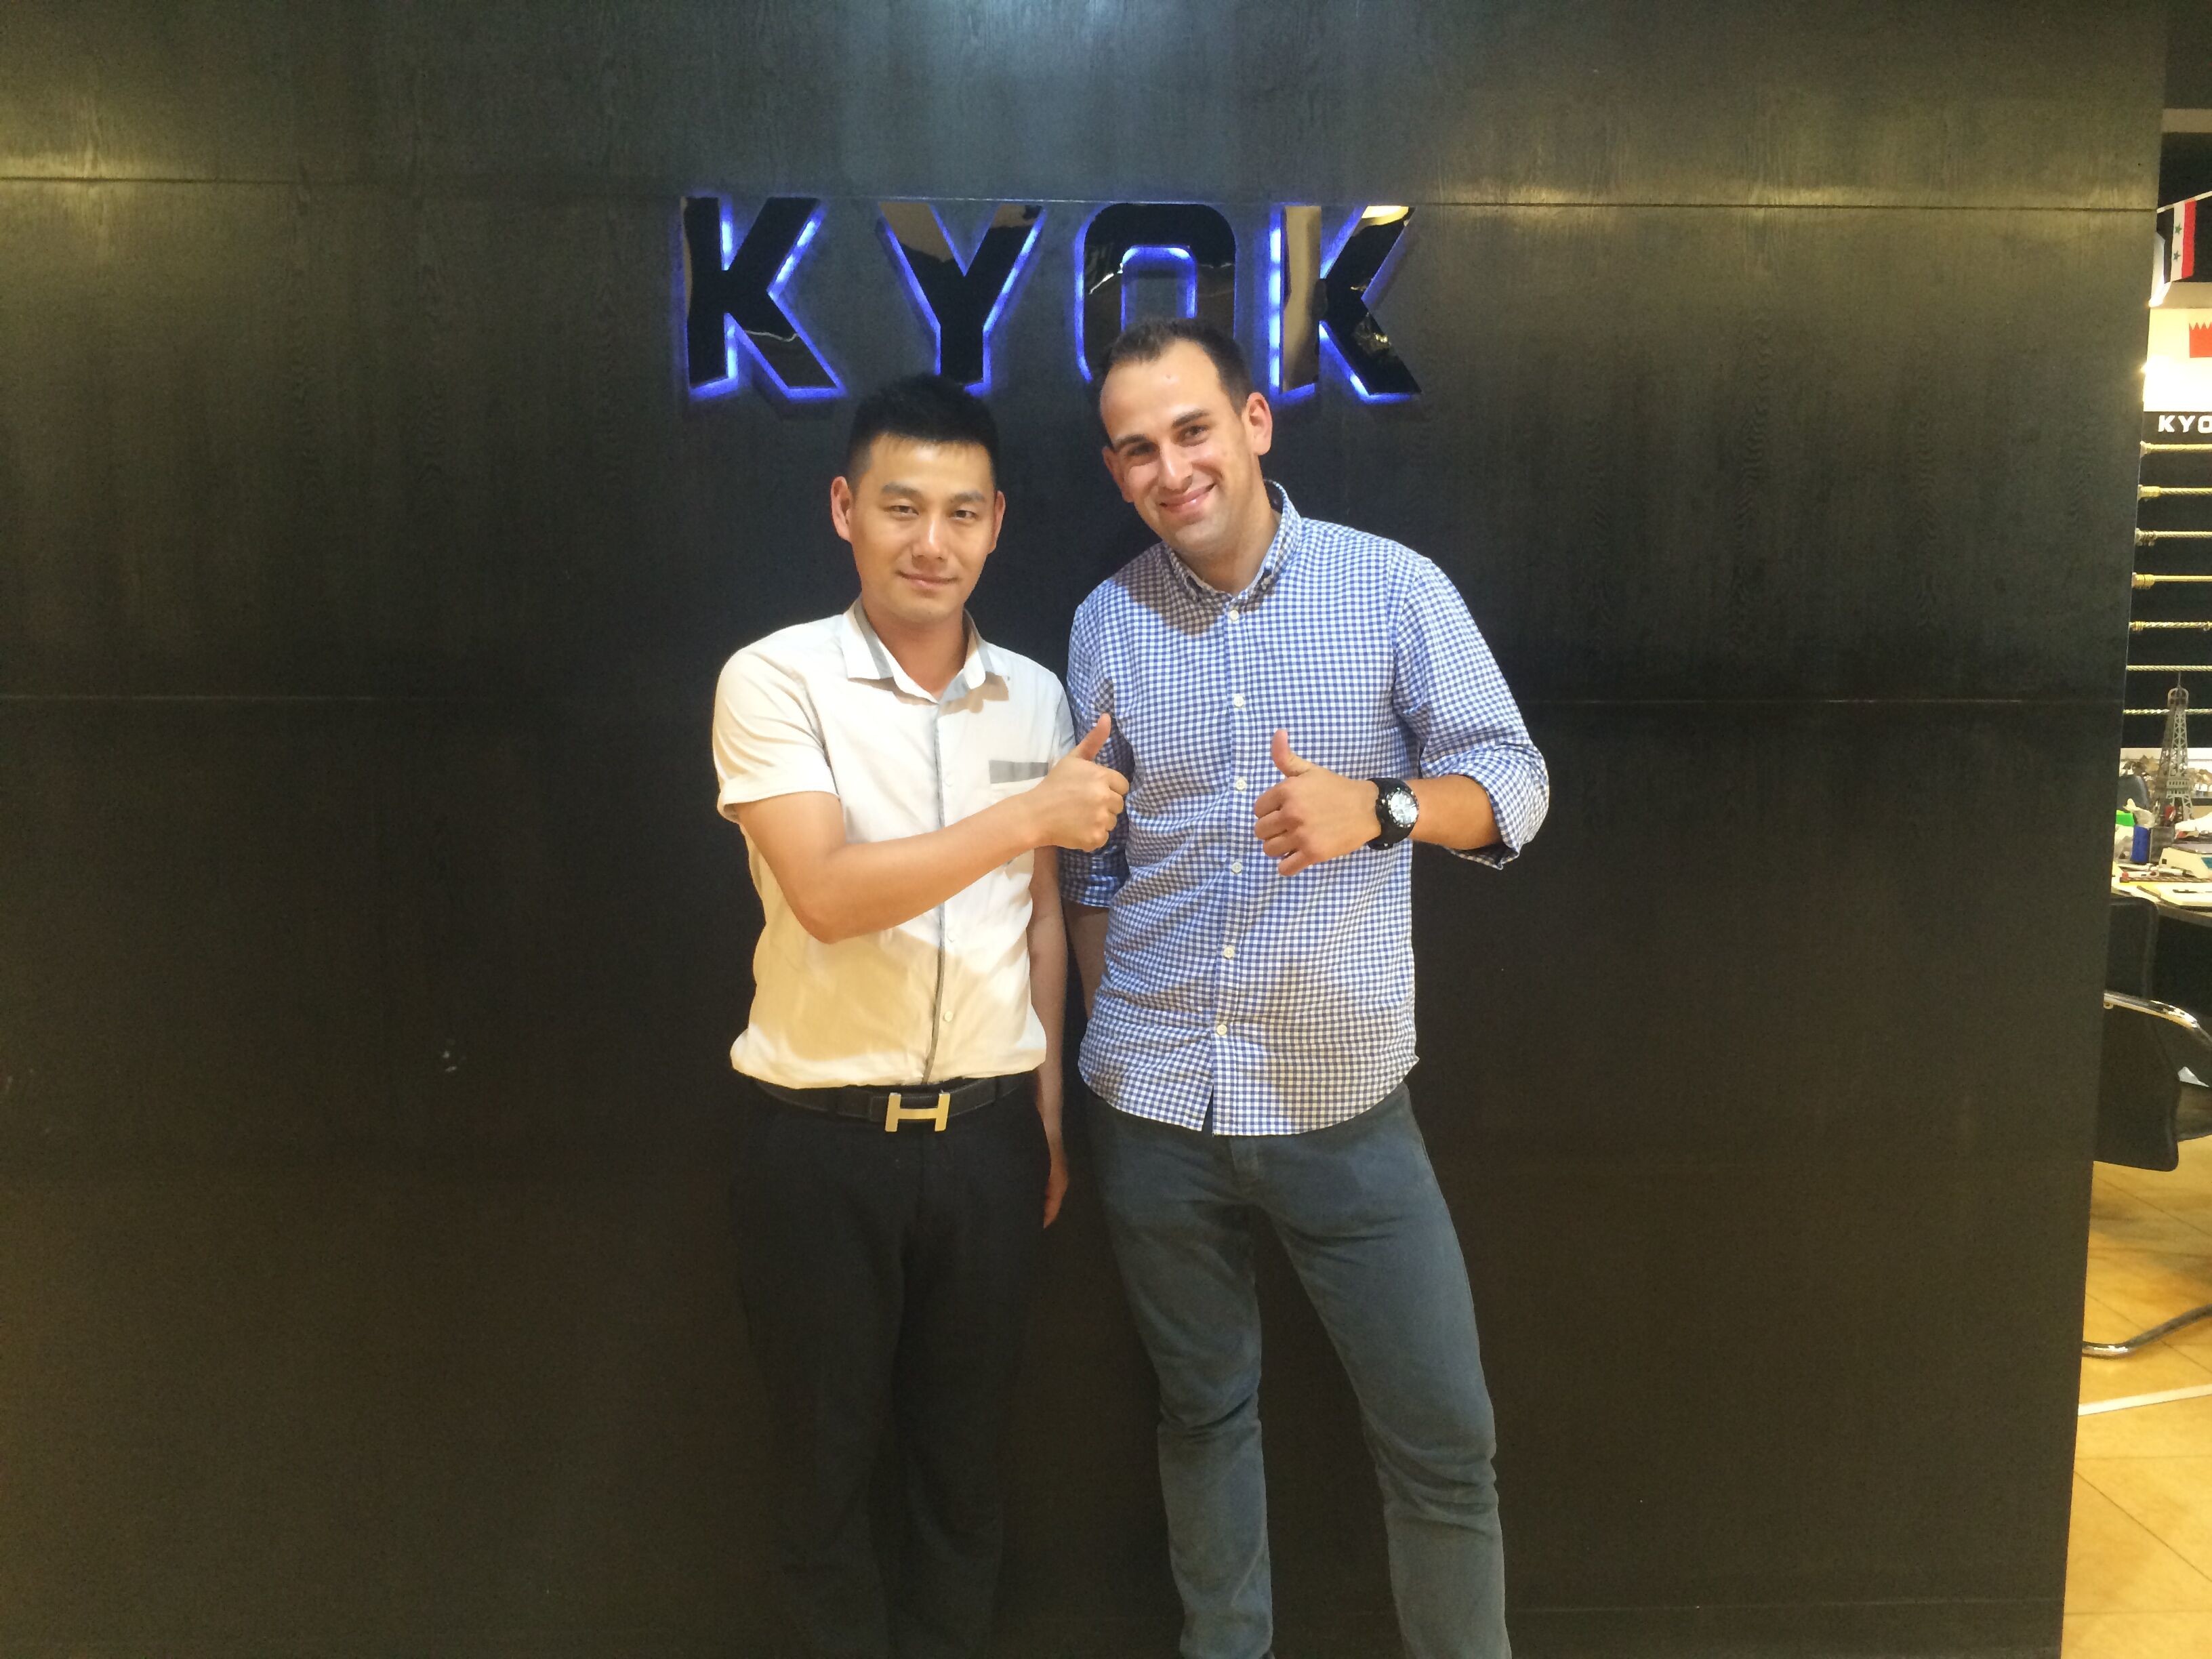 ultimo caso aziendale circa Il cliente spagnolo ha visitato KYOK